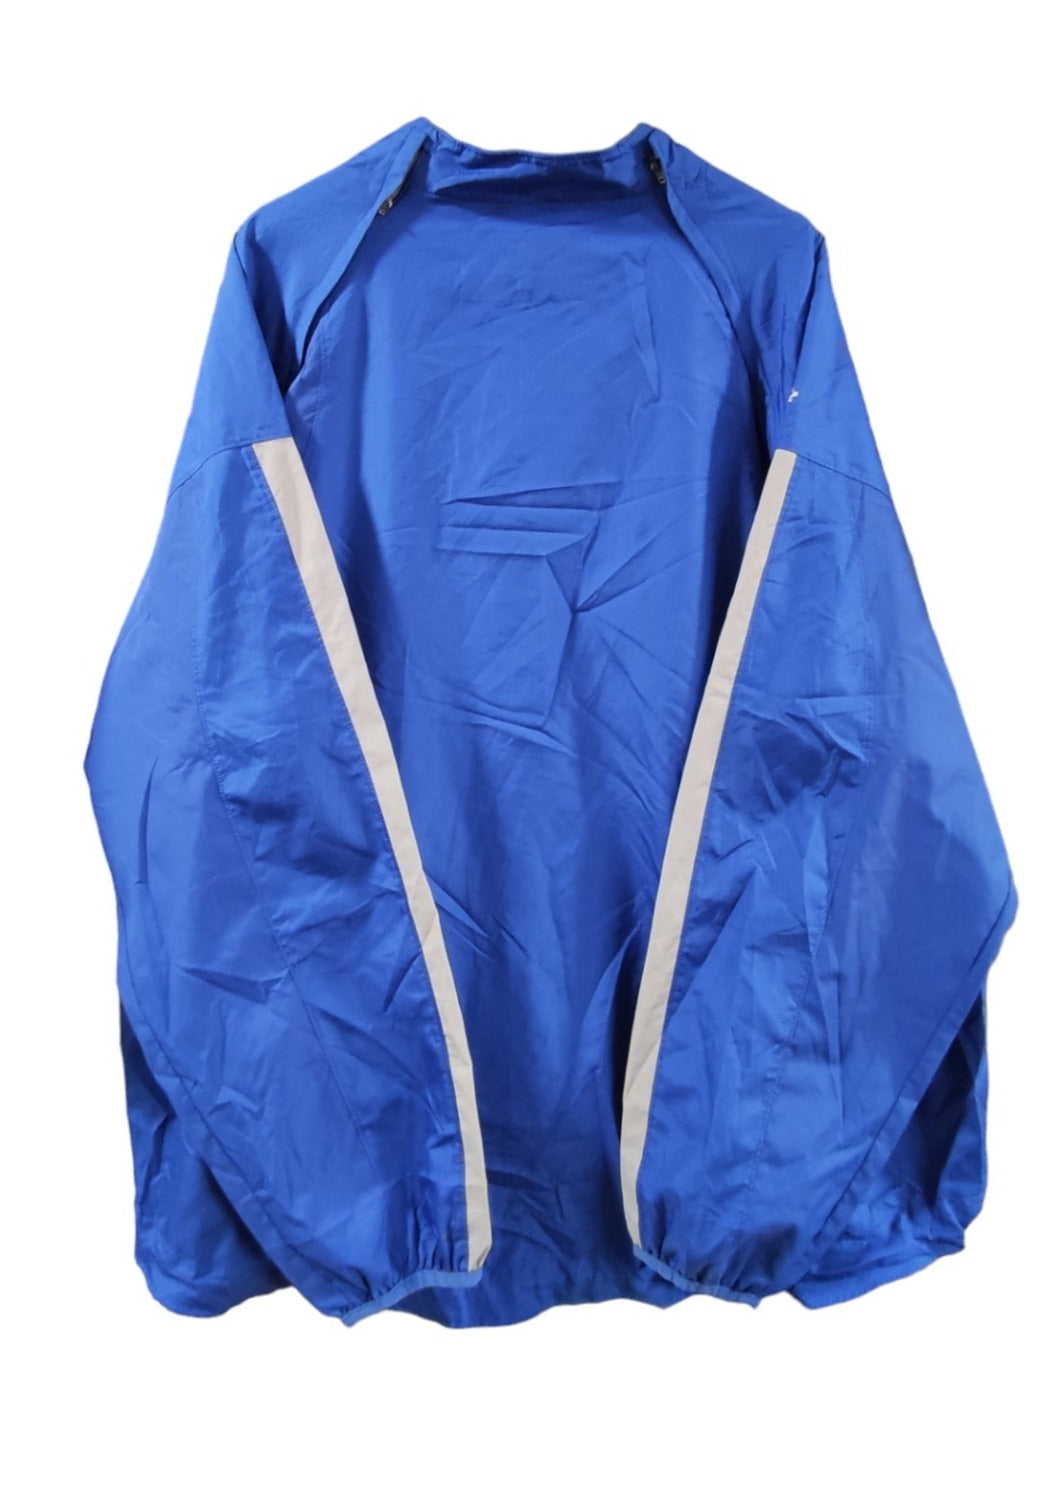 Αθλητικό Ανδρικό Πανωφόρι MAJESTIC σε Μπλε χρώμα (XL)